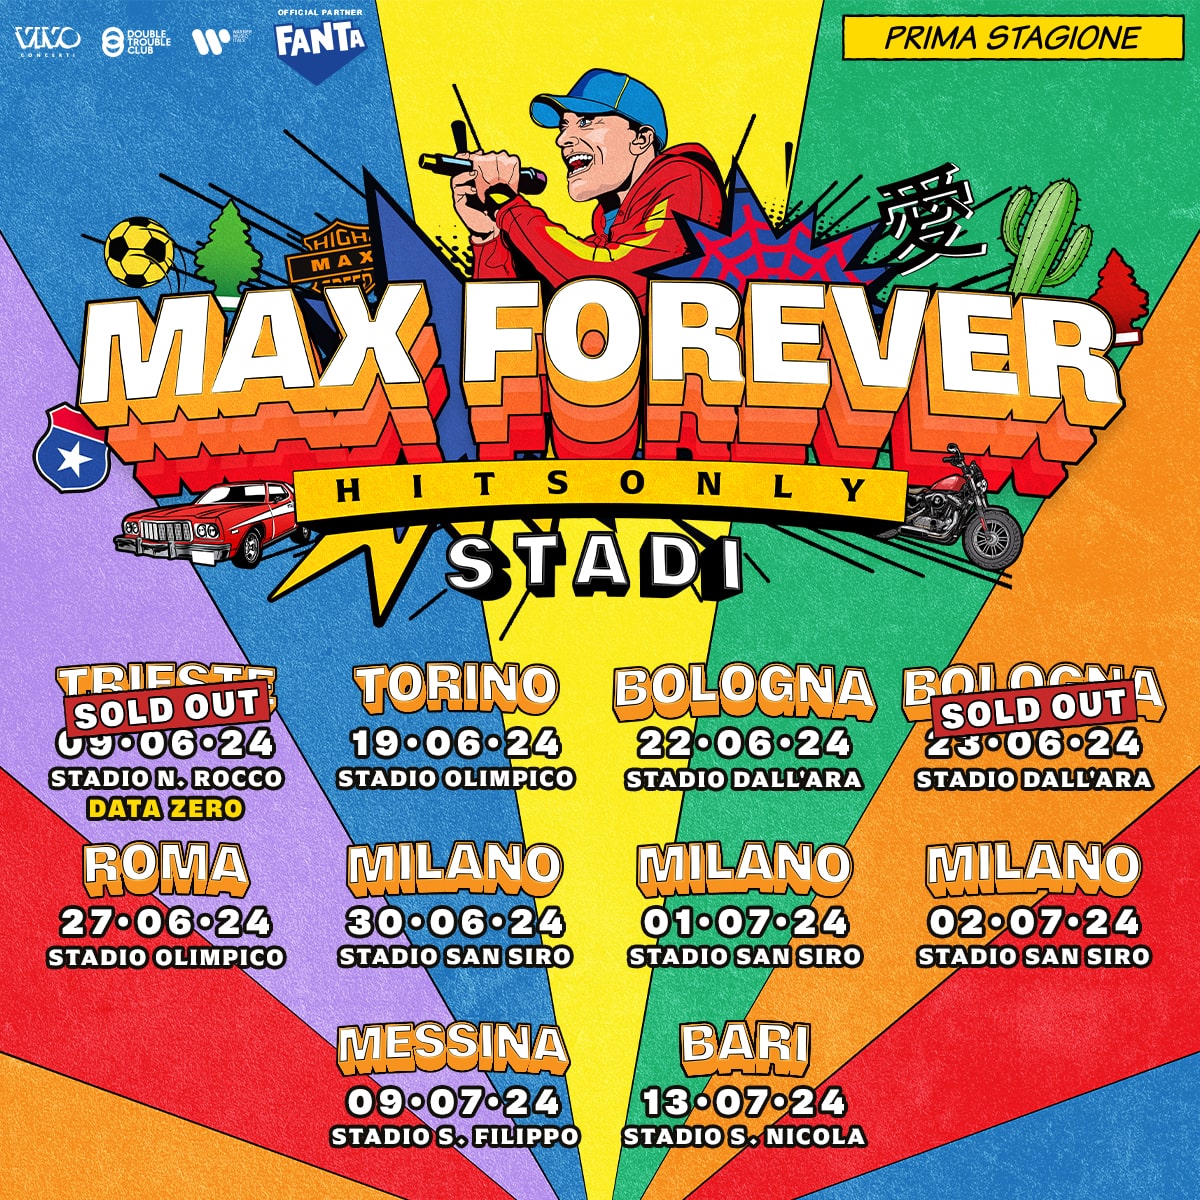 MAX FOREVER! – Comincia il tour negli stadi di Max Pezzali